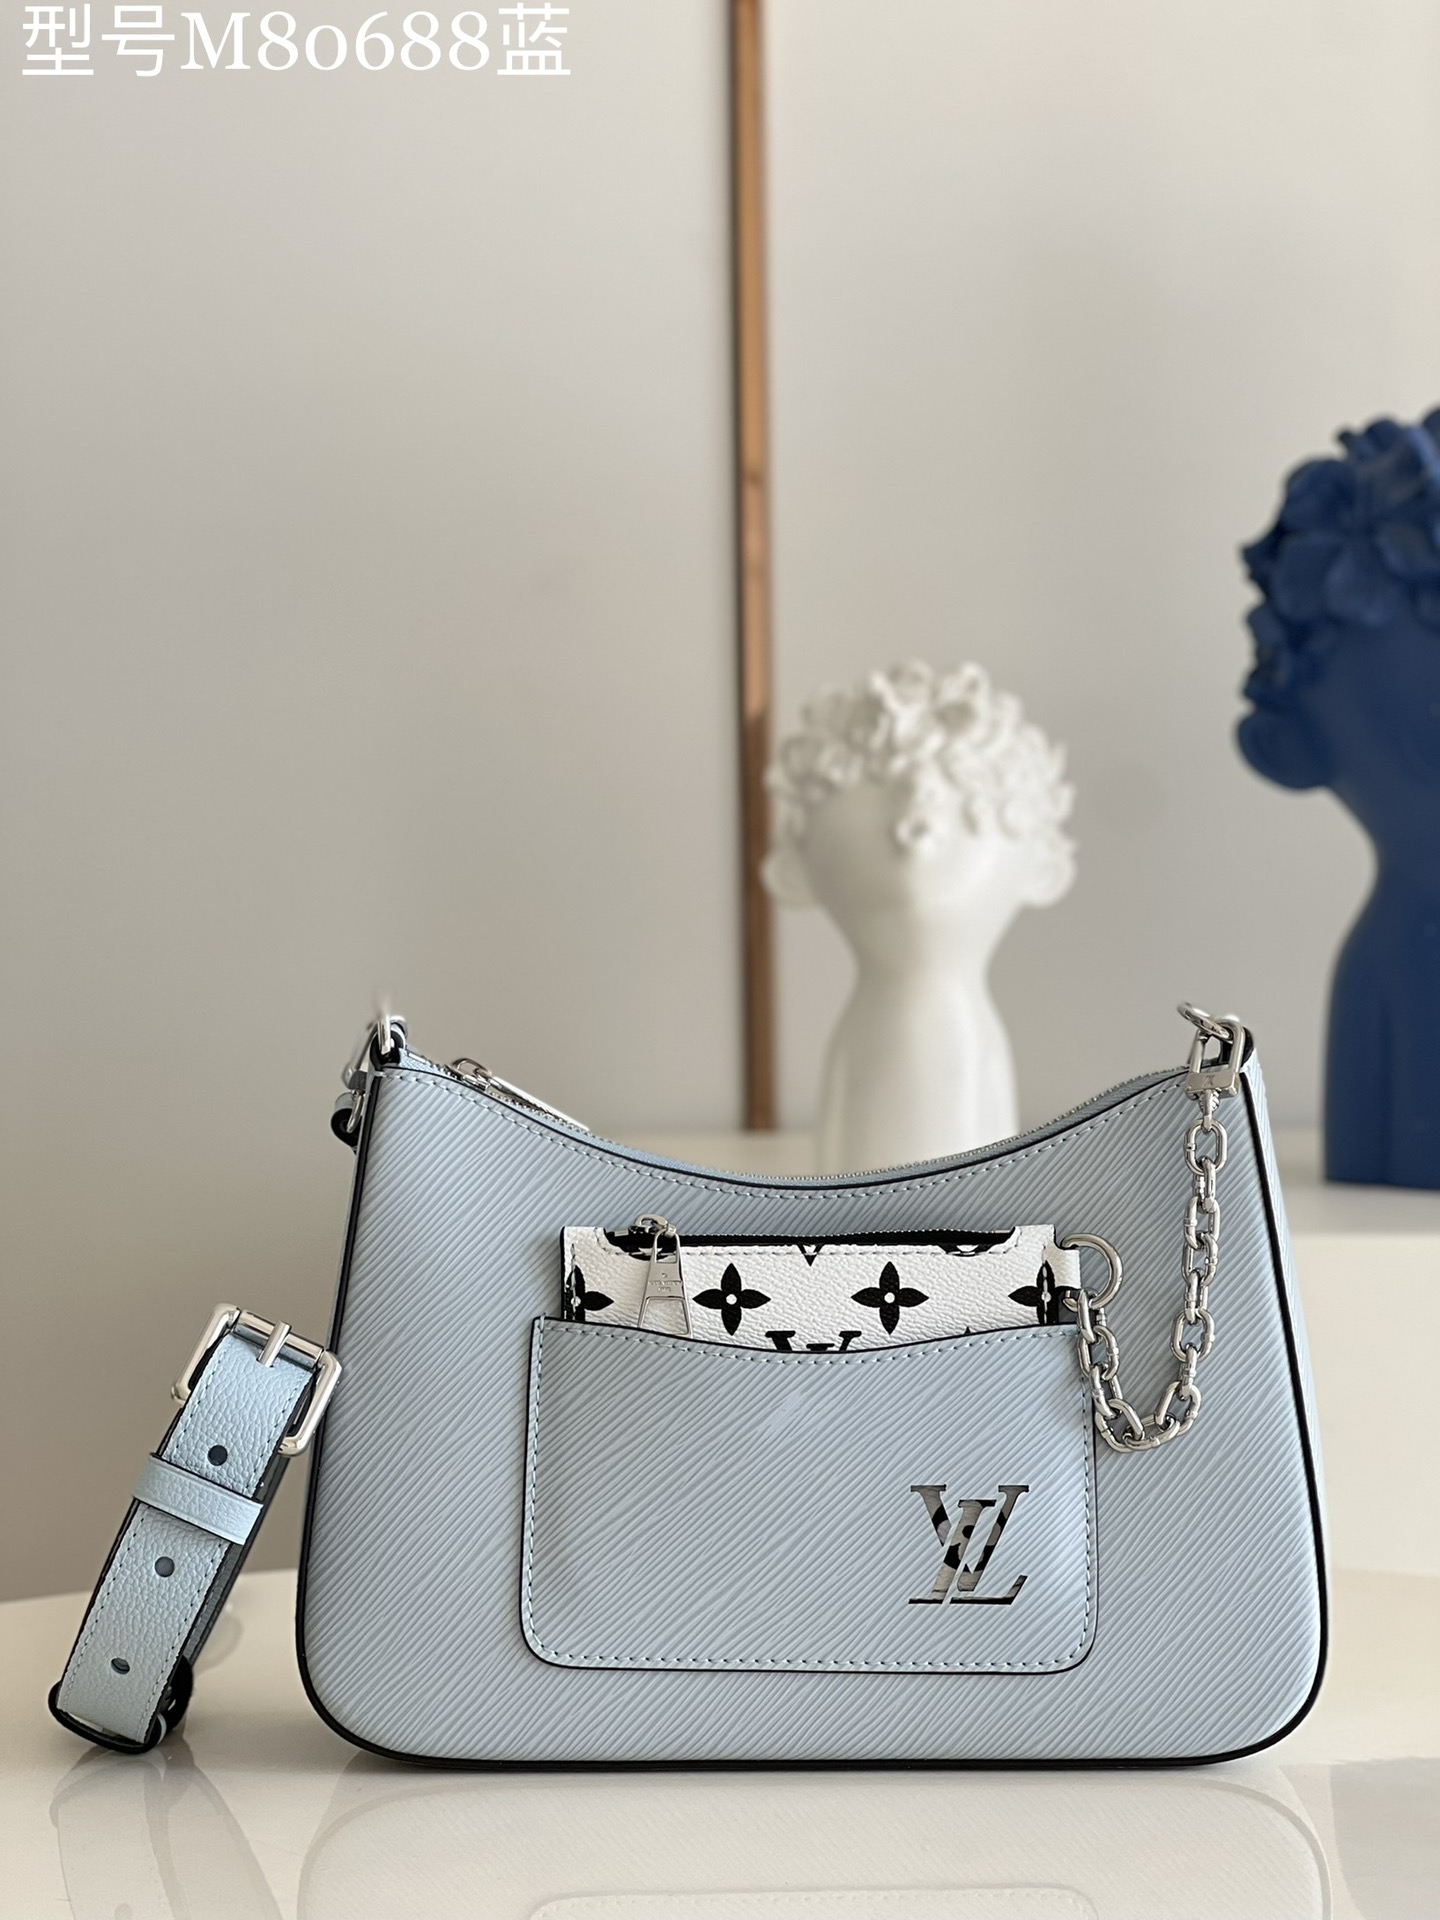 Louis Vuitton LV Marelle Bags Handbags Blue Epi Canvas Chains M80688